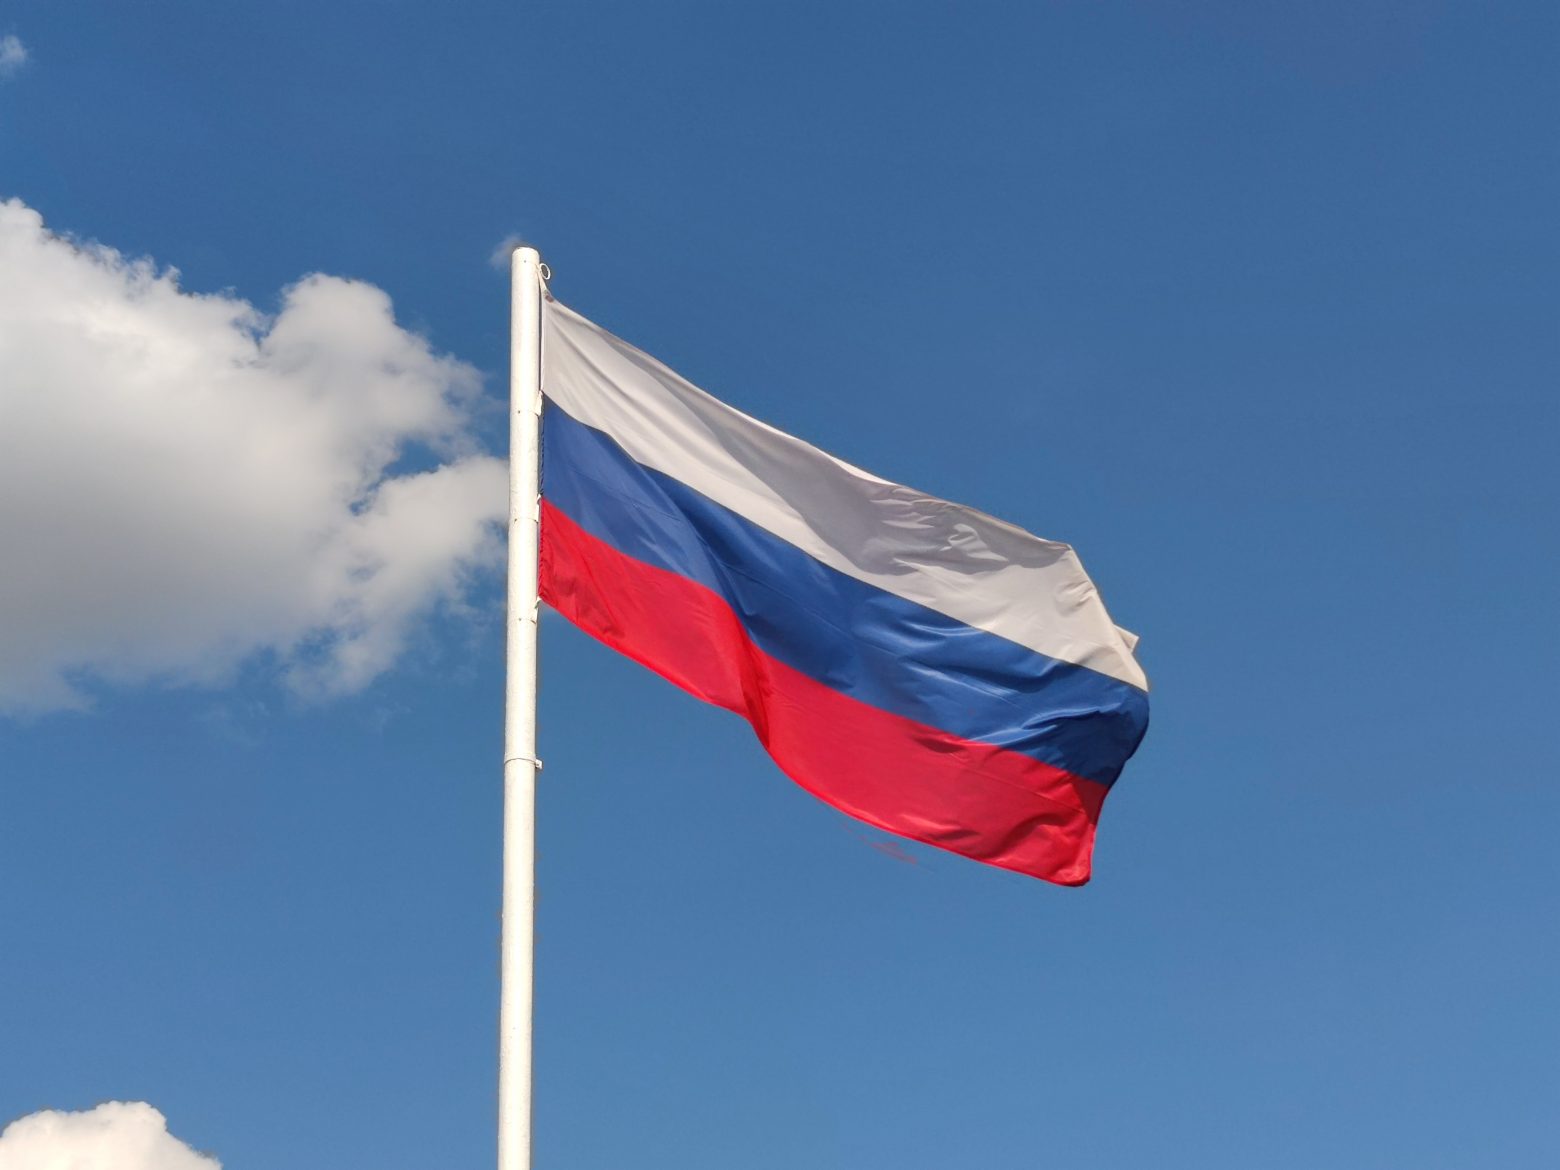 Ρωσία: 45 διπλωμάτες της απελάθηκαν από την Πολωνία - Η απάντηση θα είναι «αισθητή» λέει η Μόσχα